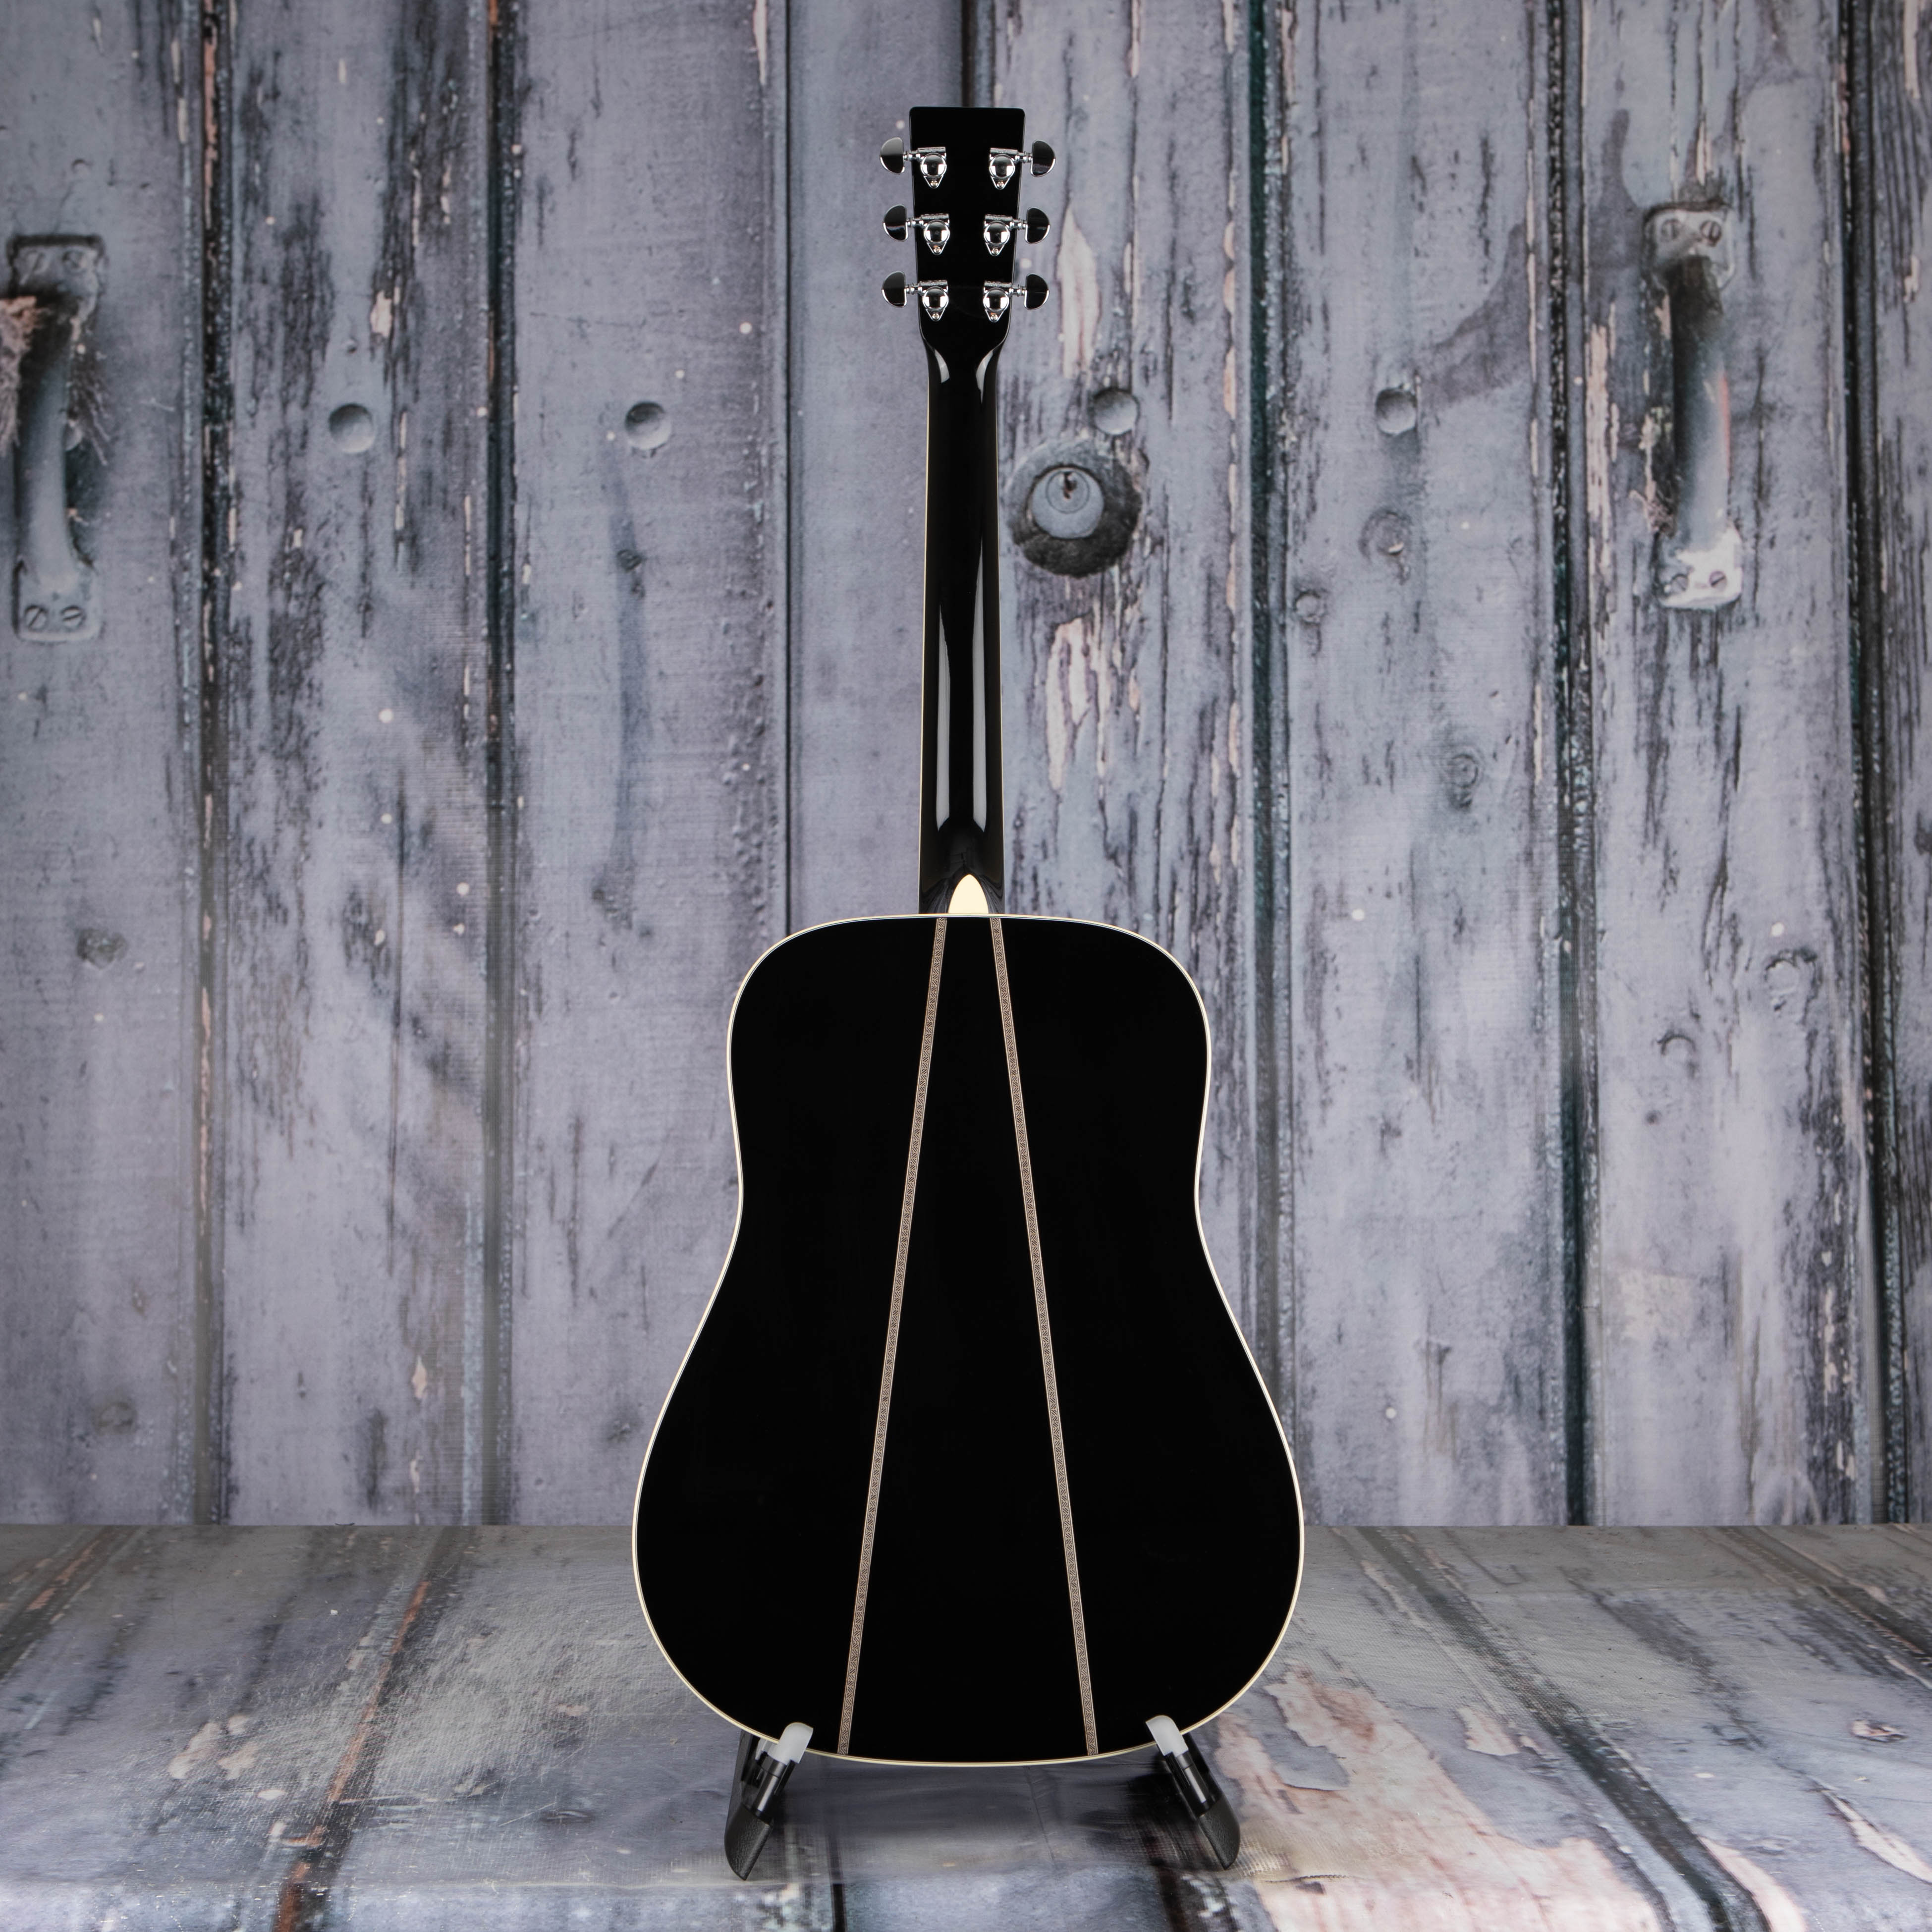 Martin D-35 Johnny Cash Acoustic Guitar, Black, back